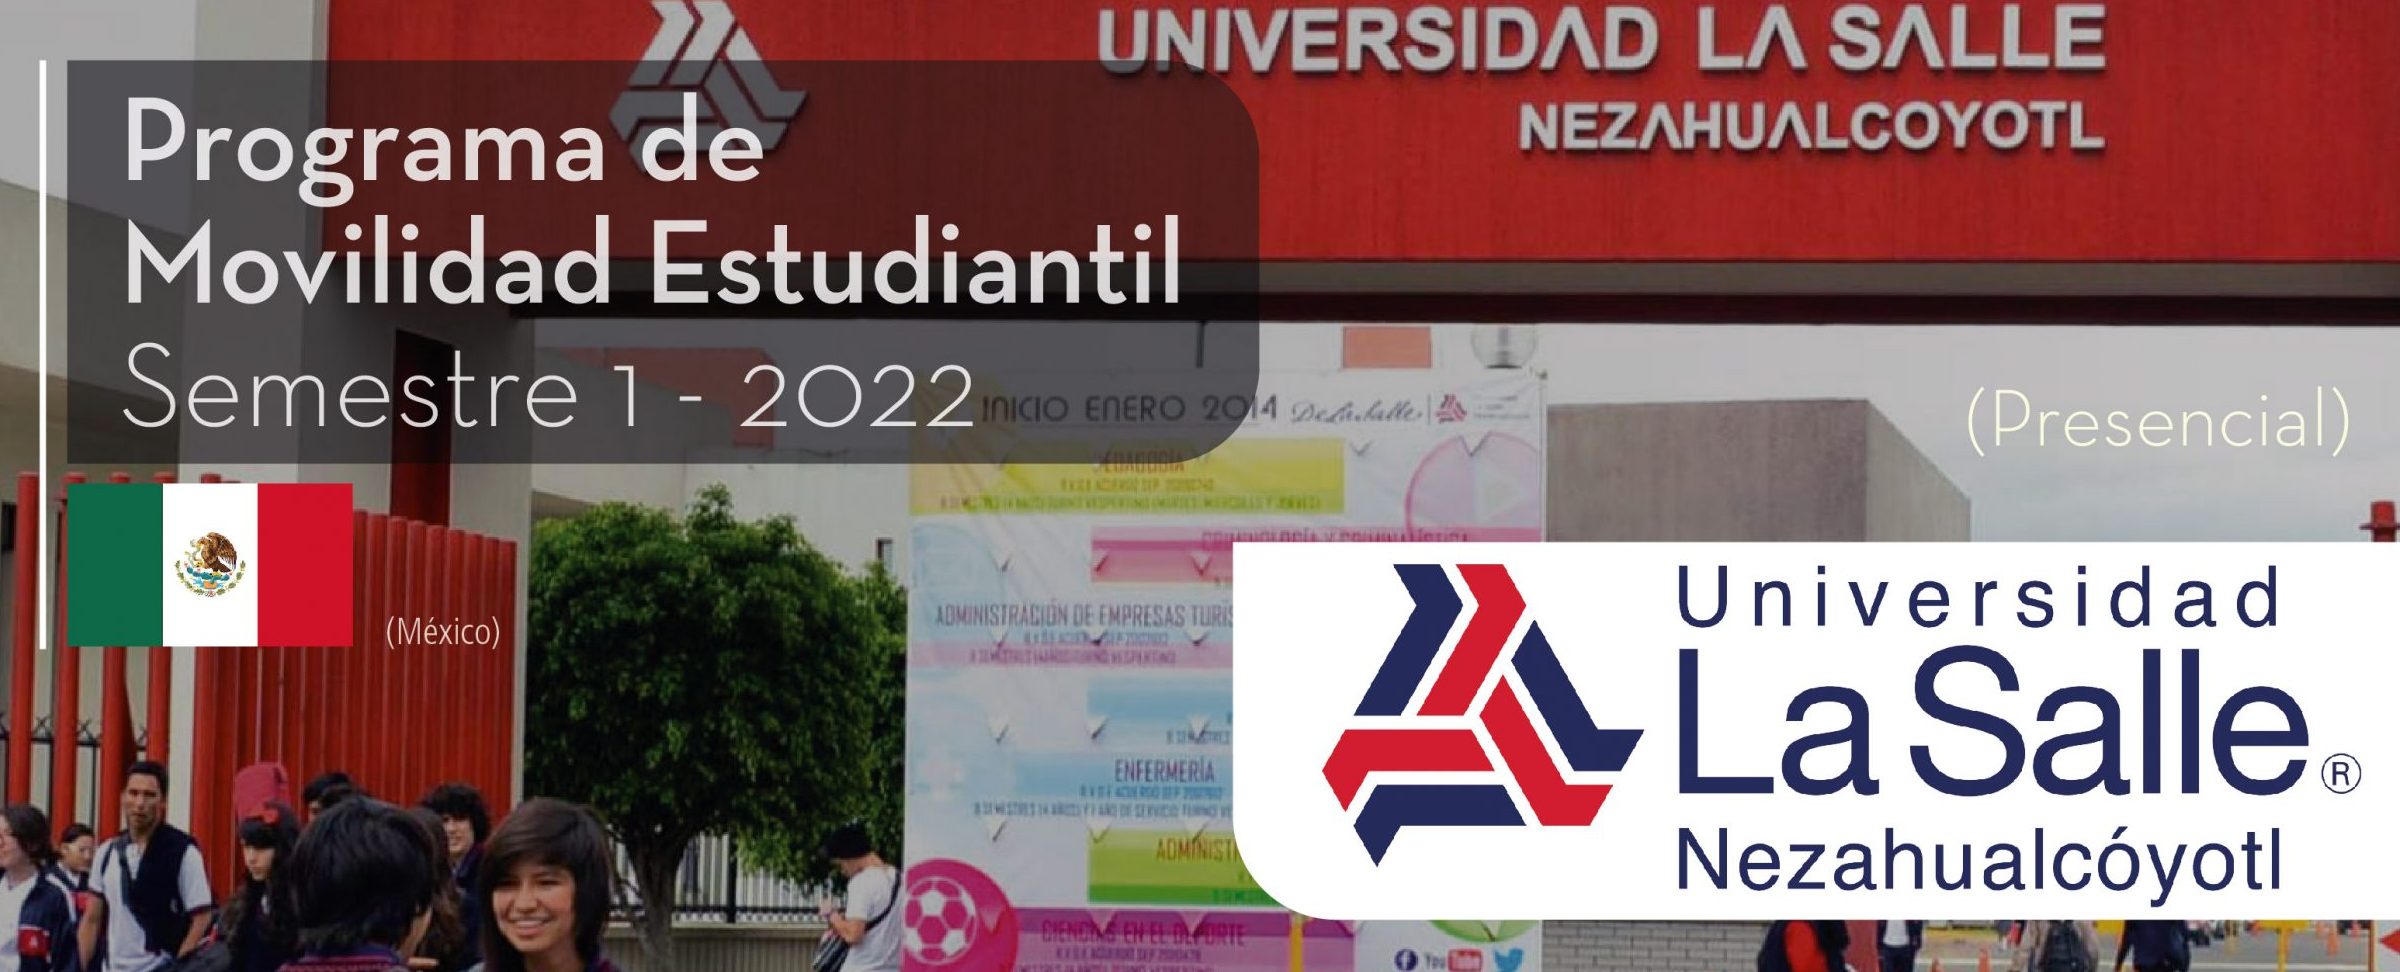 La Universidad La Salle Nezahualcoyotl de México es parte del Programa de Movilidad Virtual Estudiantil UCB por el Mundo.